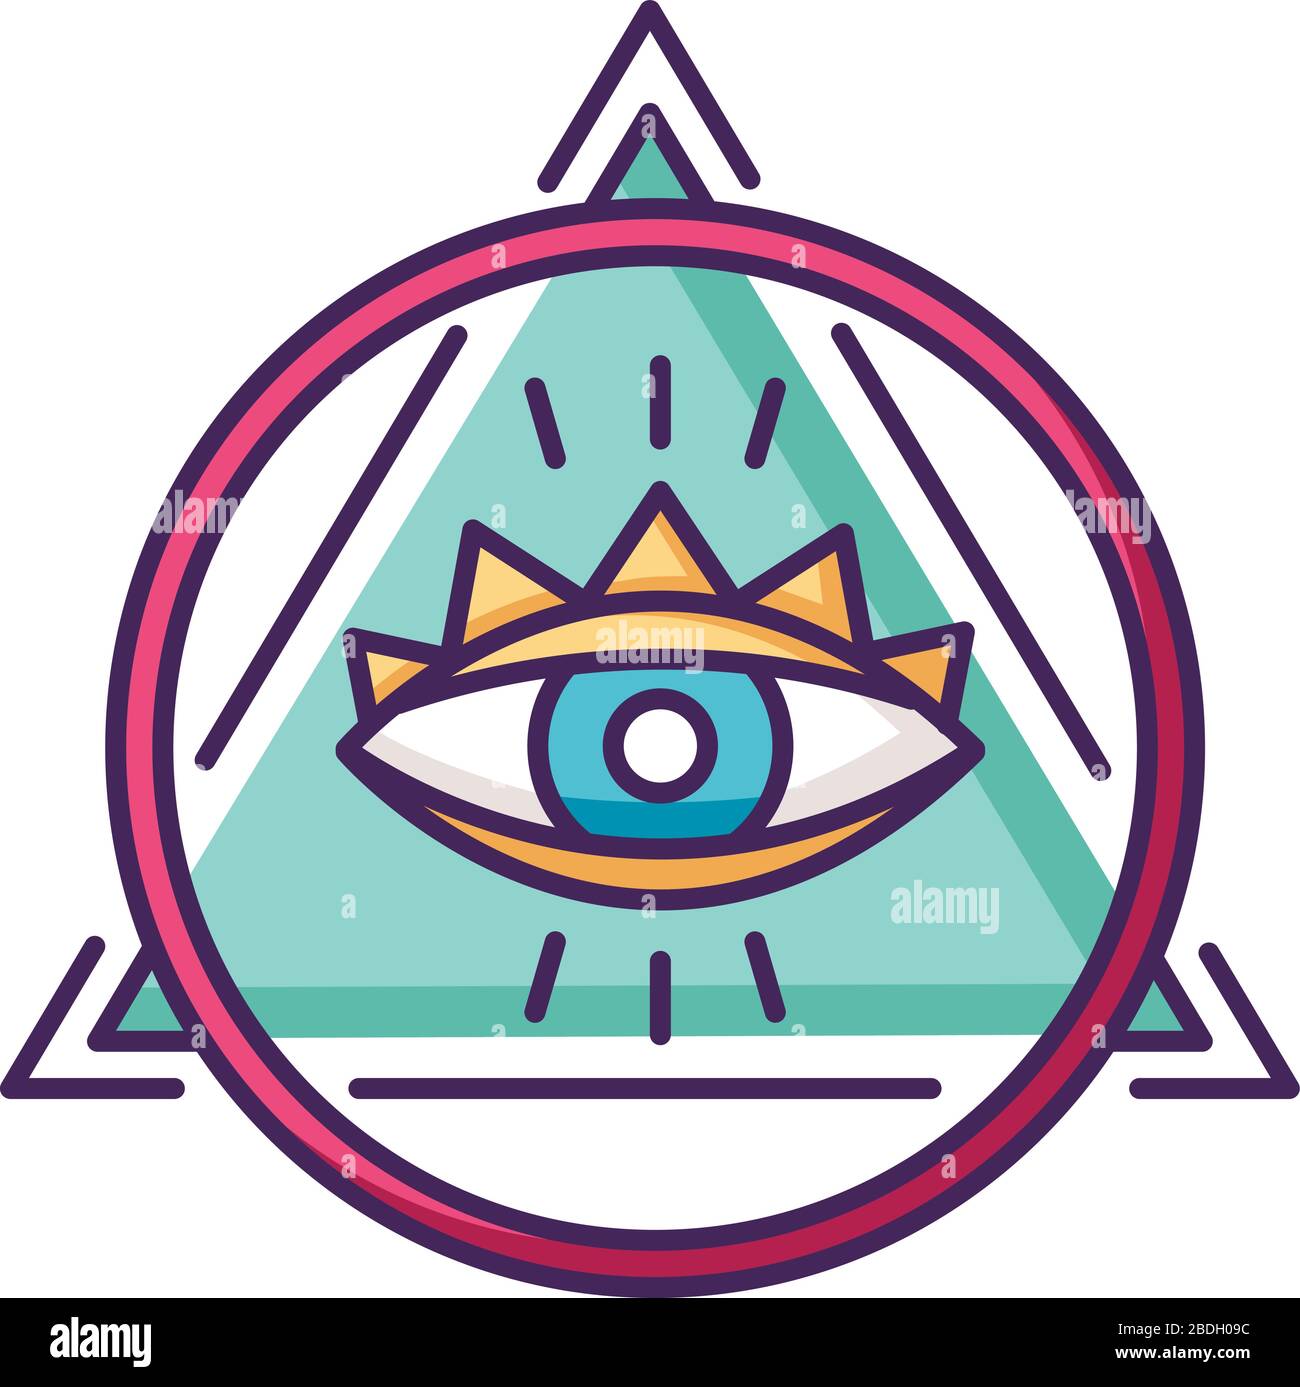 RGB-Farbsymbol "Eye of Providence". Okkultes Symbol. Alle sehenden Augen mit Kreis und Dreieck, geheimnisvoller Talisman. Religiöse, magische und esoterische Zeichen Stock Vektor